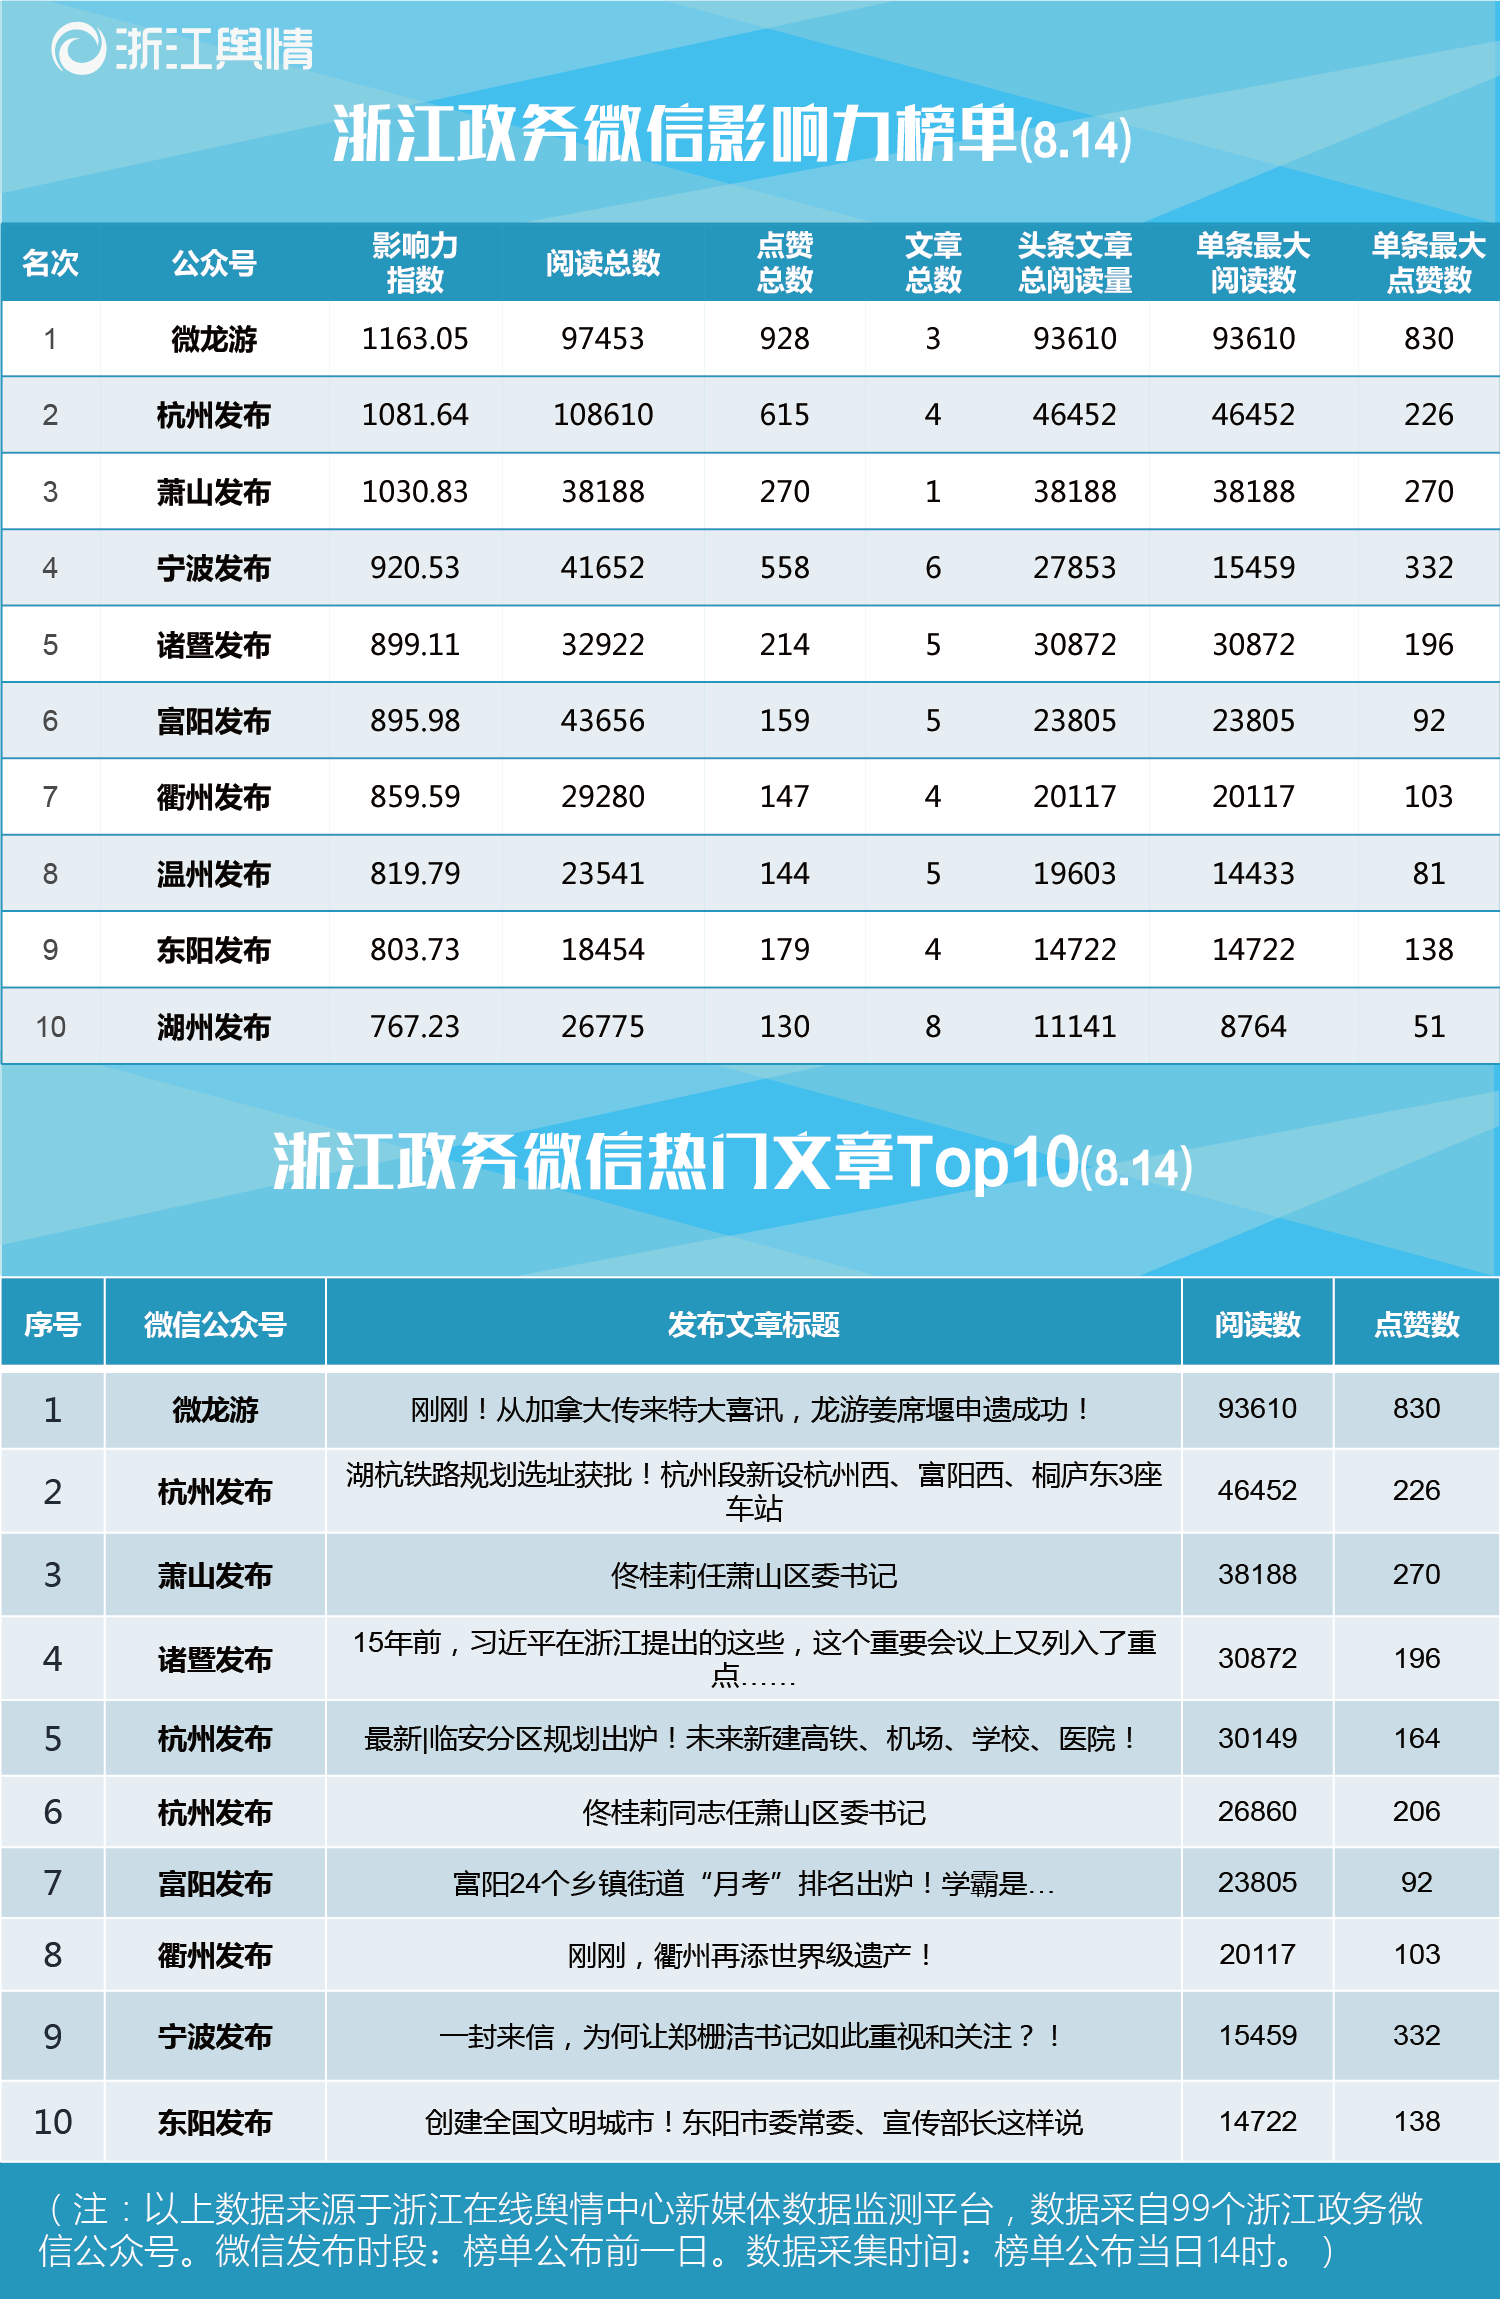 浙江政务微信榜单(8.14):微龙游获双榜第一